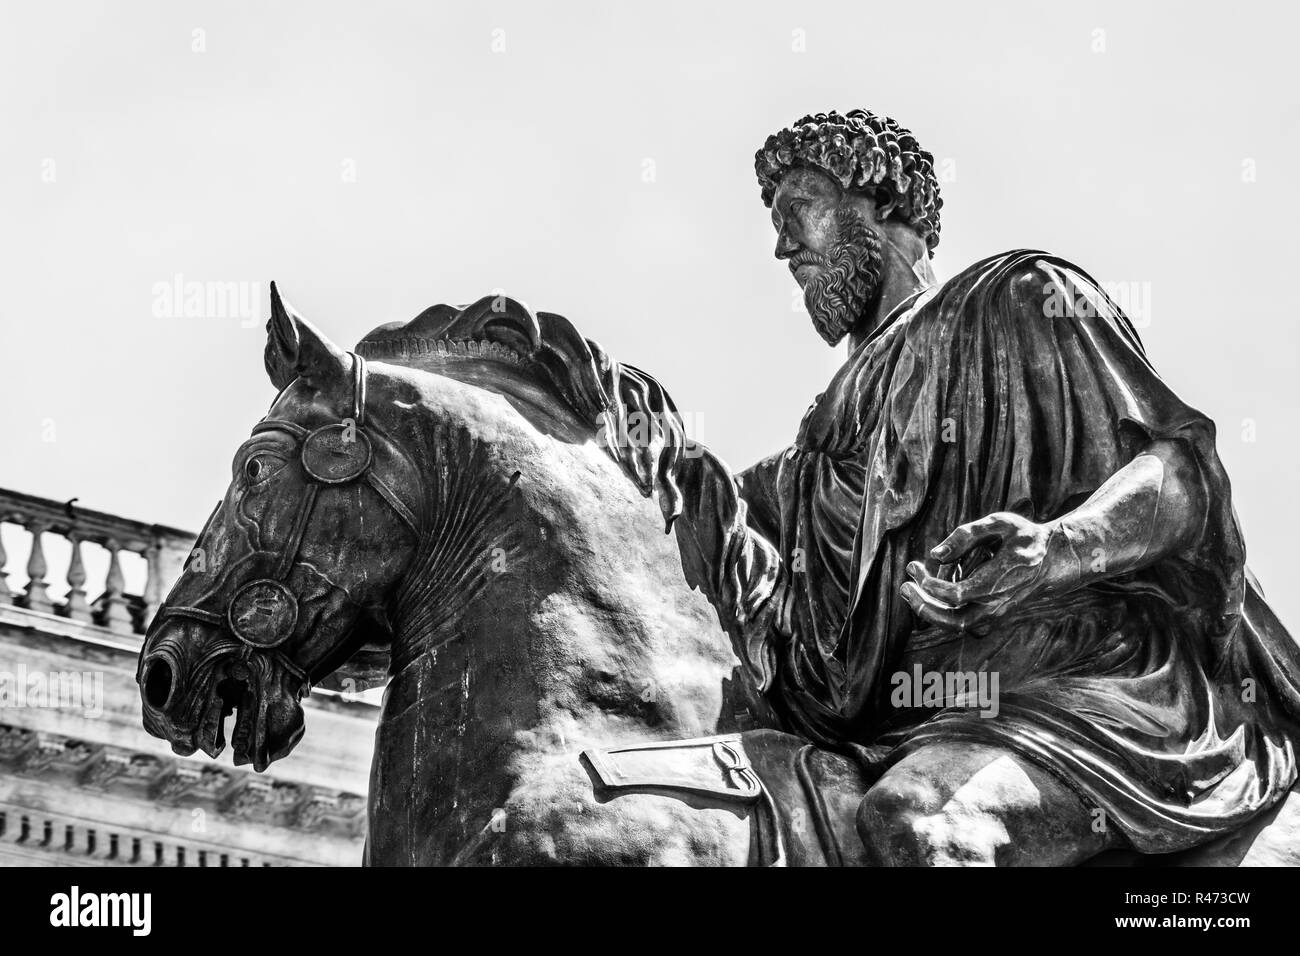 Equestrian statue of Marco Aurelio in Rome Stock Photo